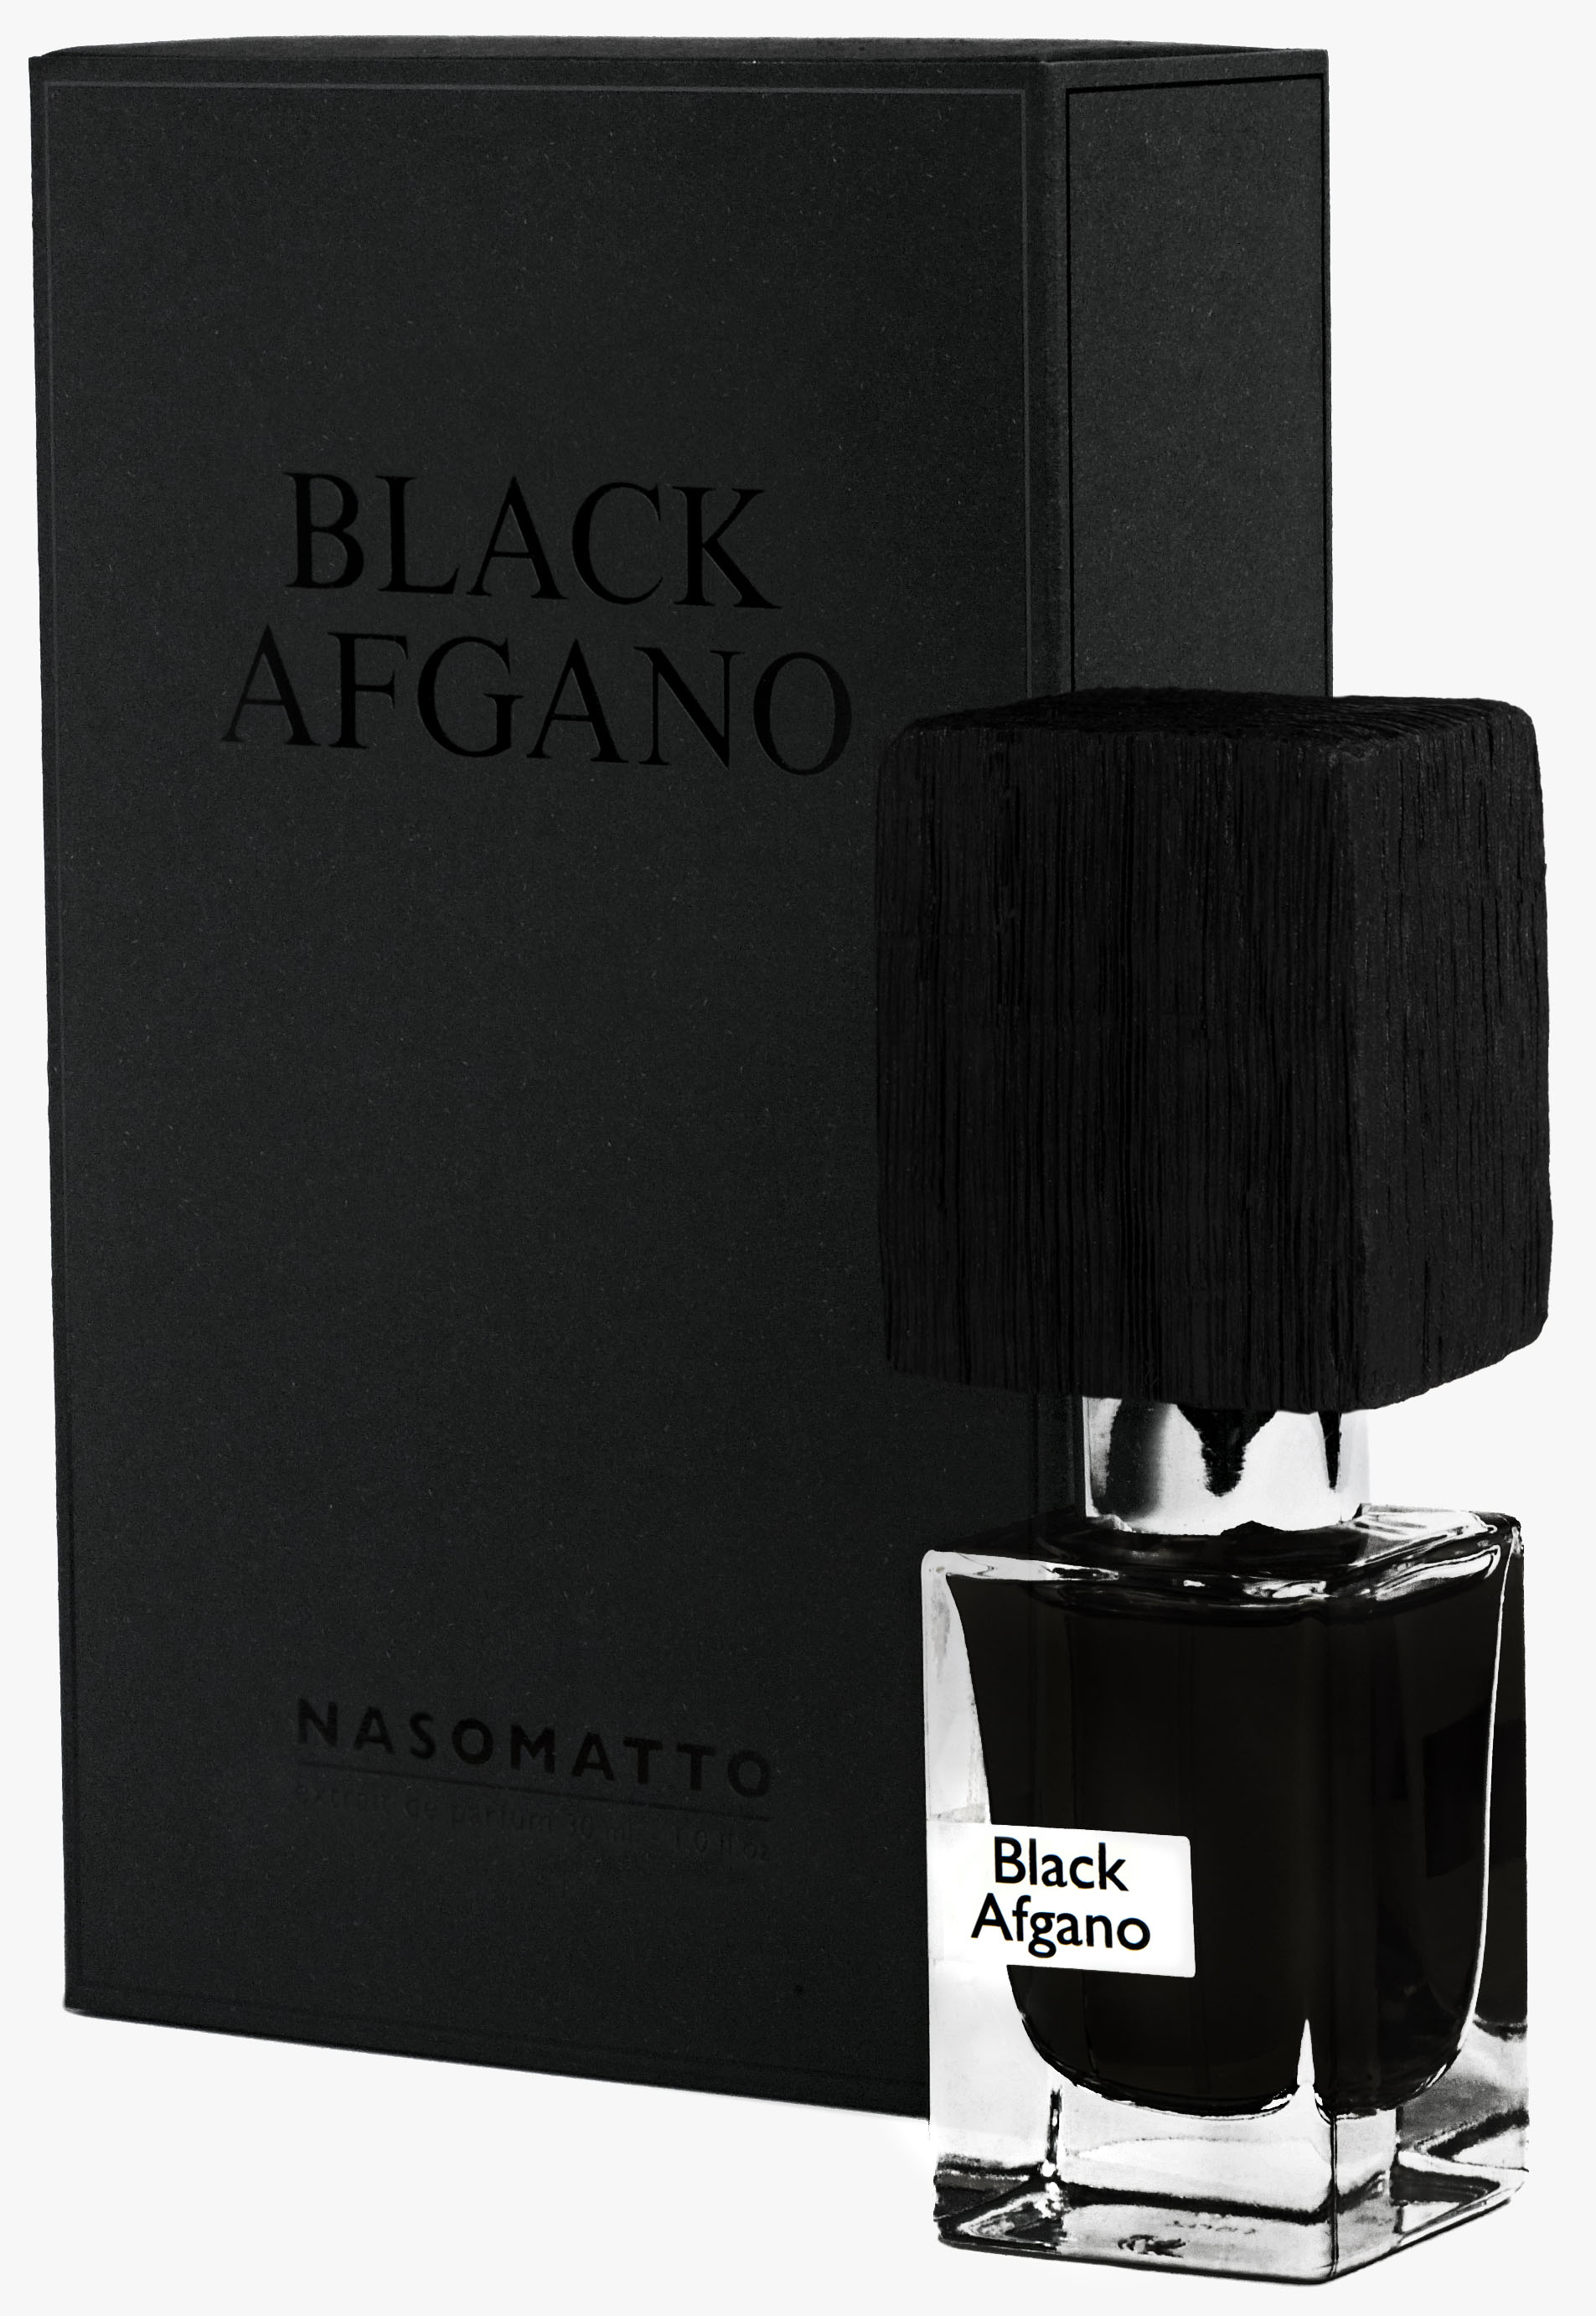 Black Afgano - Nasomatto - 30 ml - edp